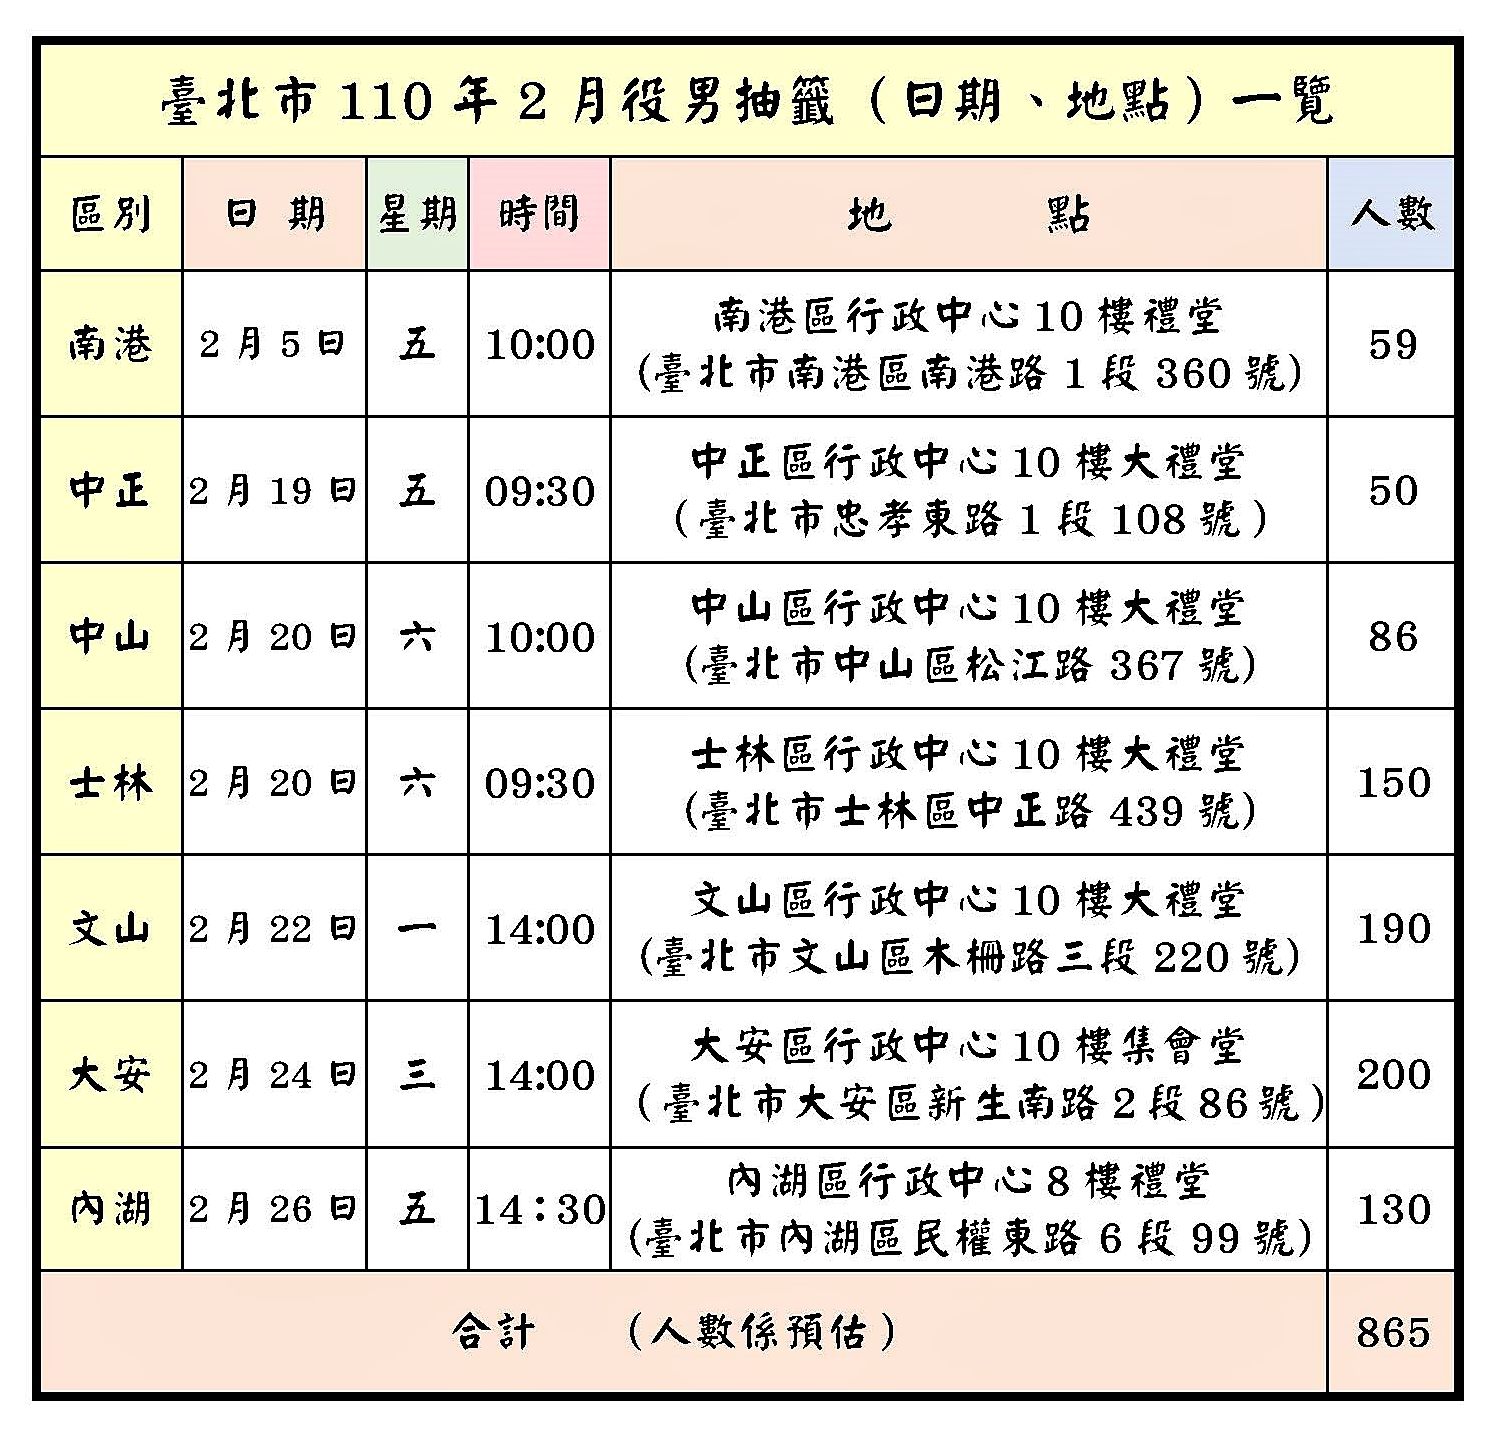 臺北市110年2月役男抽籤（日期、地點）一覽表圖